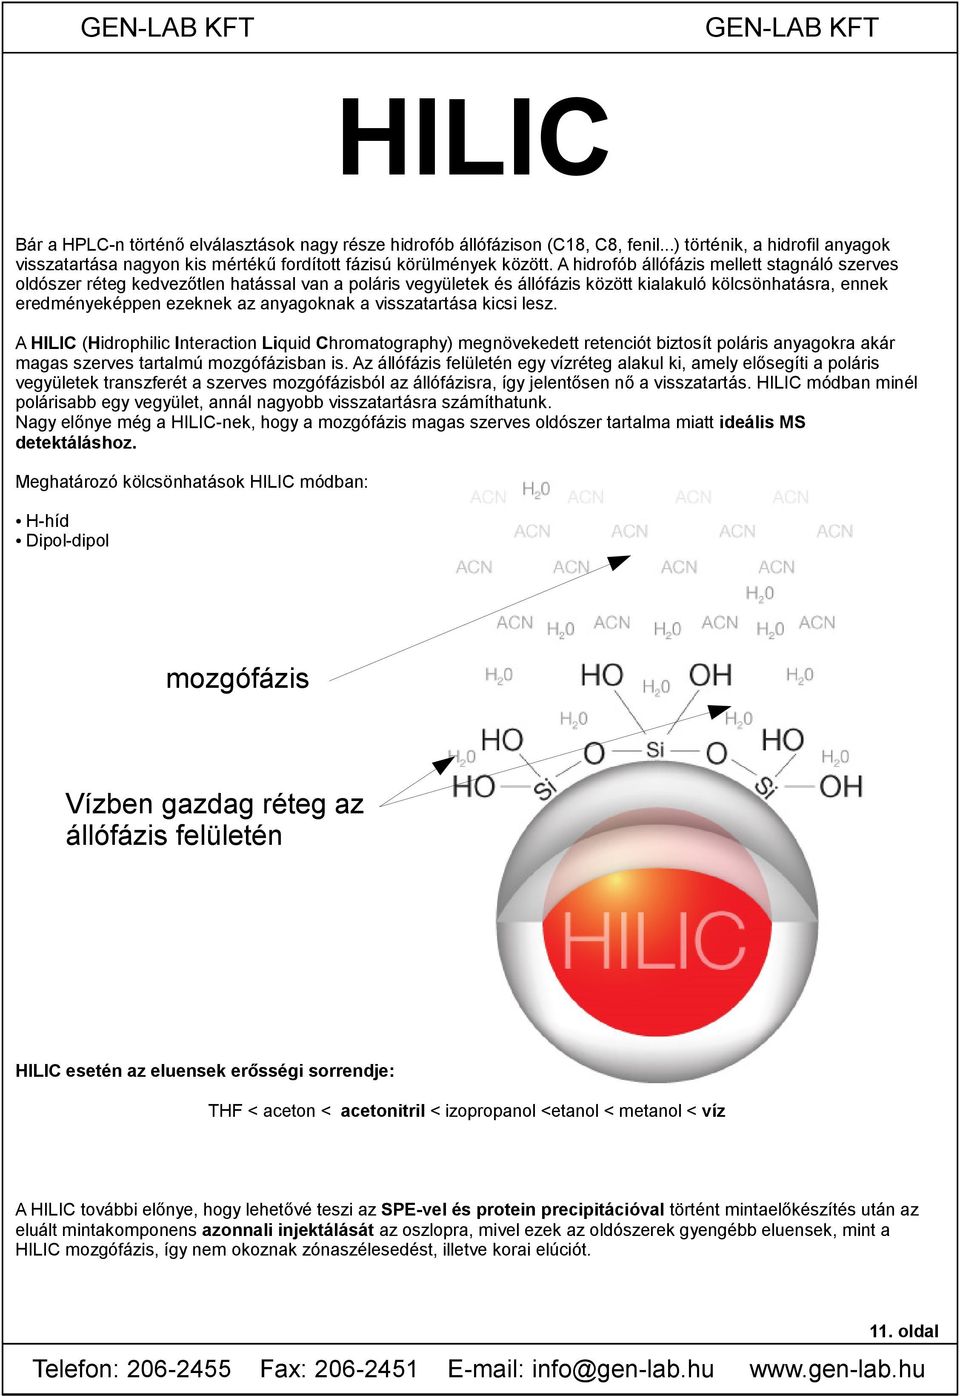 visszatartása kicsi lesz. A HILIC (Hidrophilic Interaction Liquid Chromatography) megnövekedett retenciót biztosít poláris anyagokra akár magas szerves tartalmú mozgófázisban is.